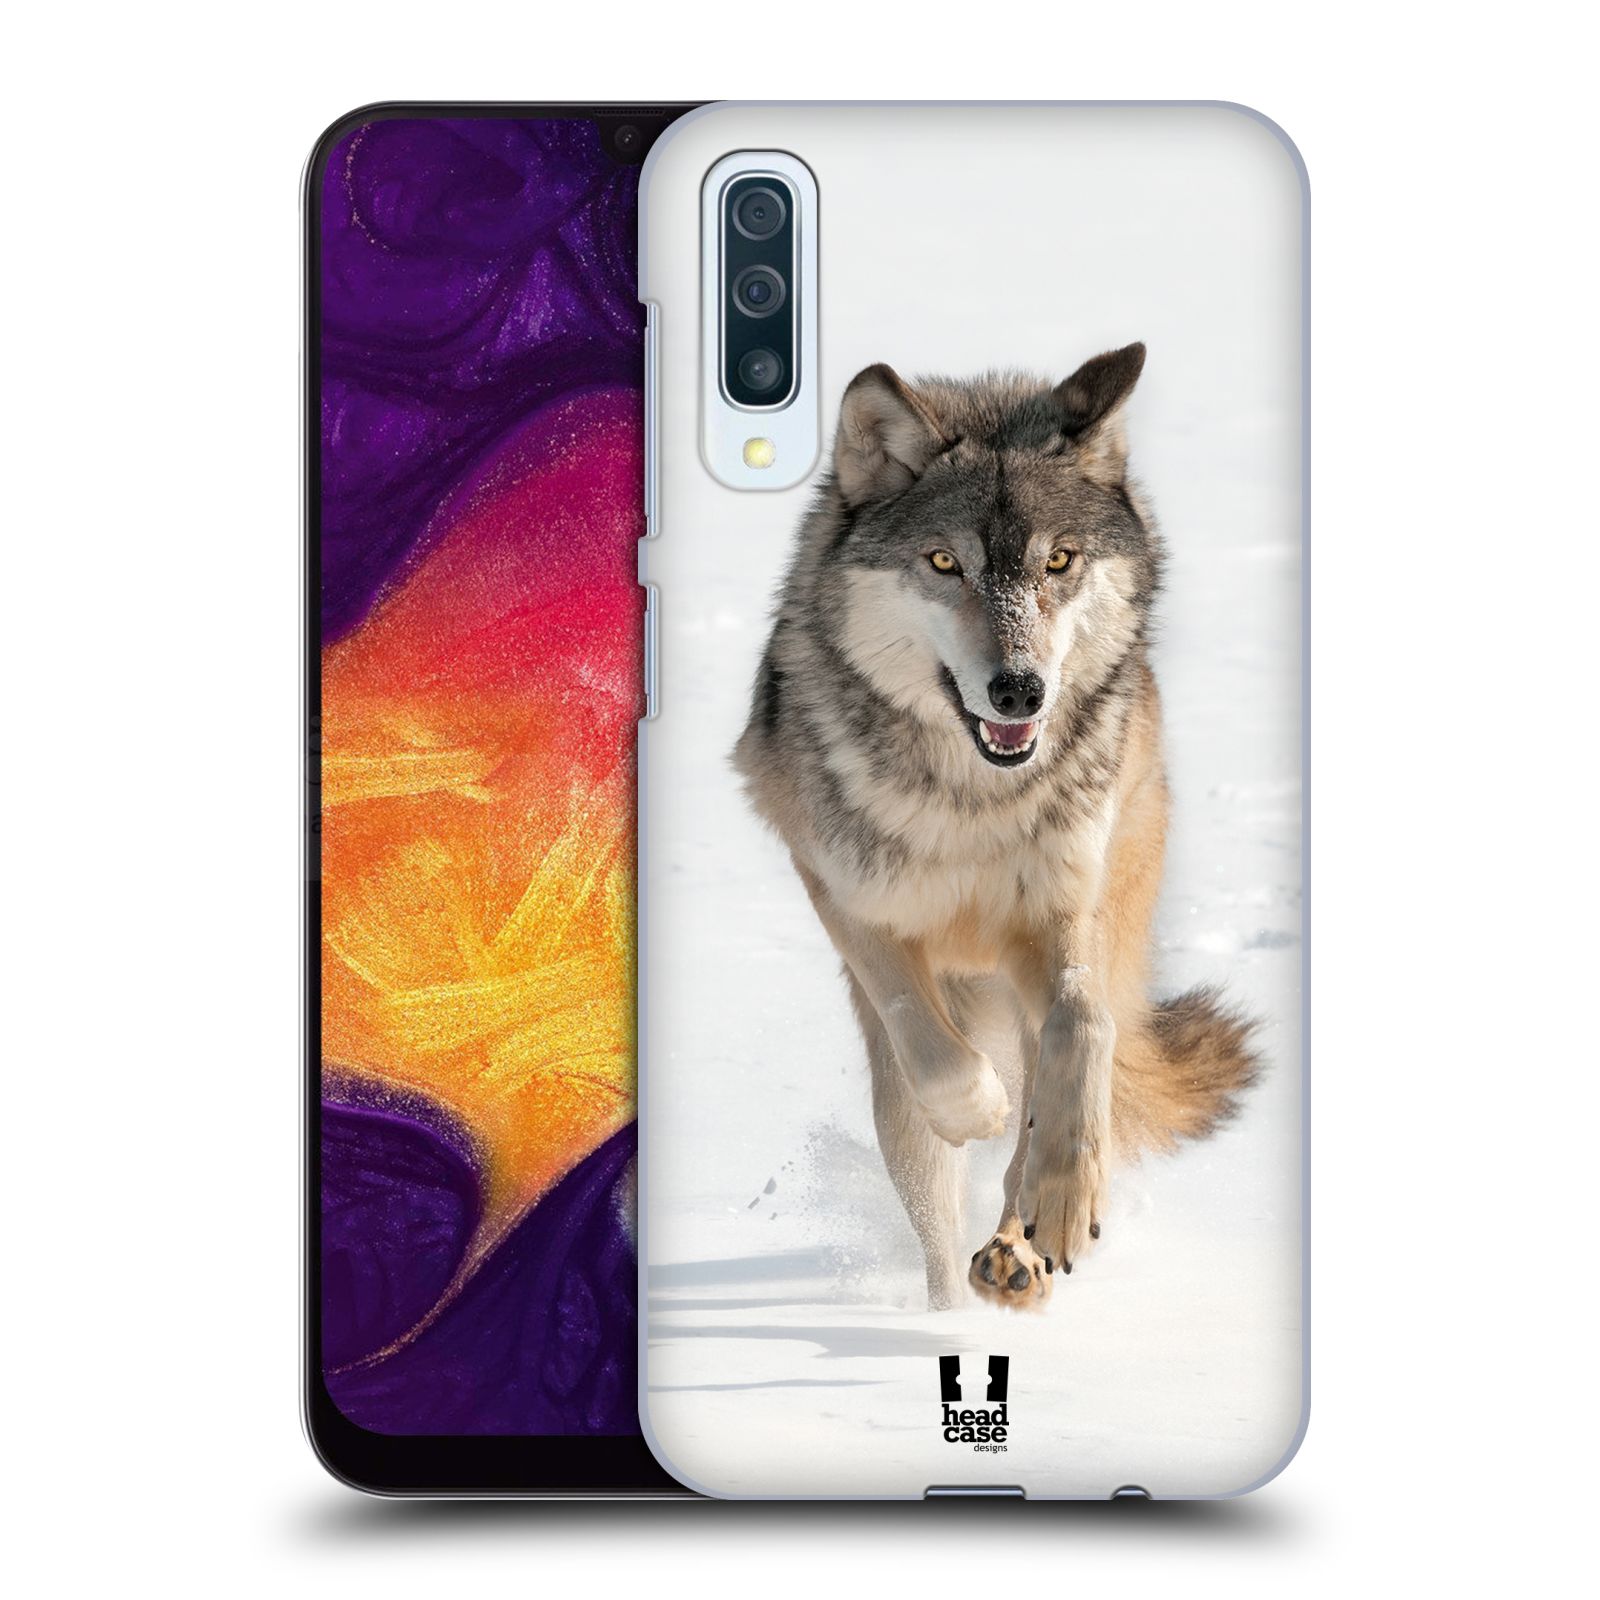 Zadní obal pro mobil Samsung Galaxy A50 / A30s - HEAD CASE - Svět zvířat divoký vlk